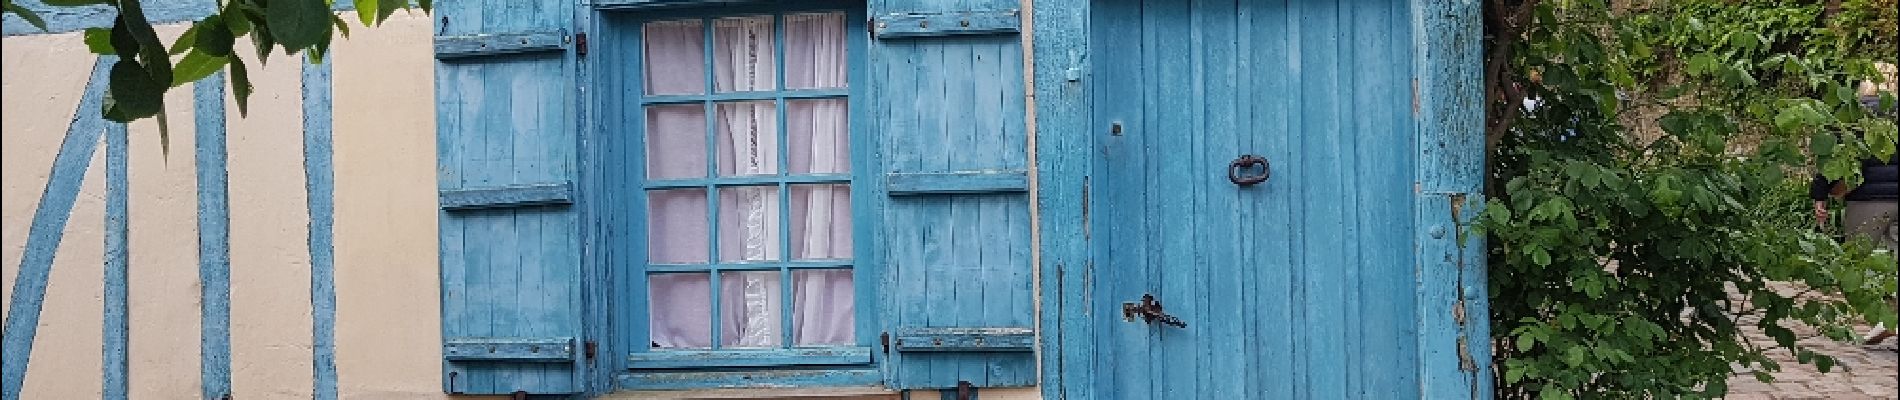 POI Gerberoy - La maison bleue - Photo